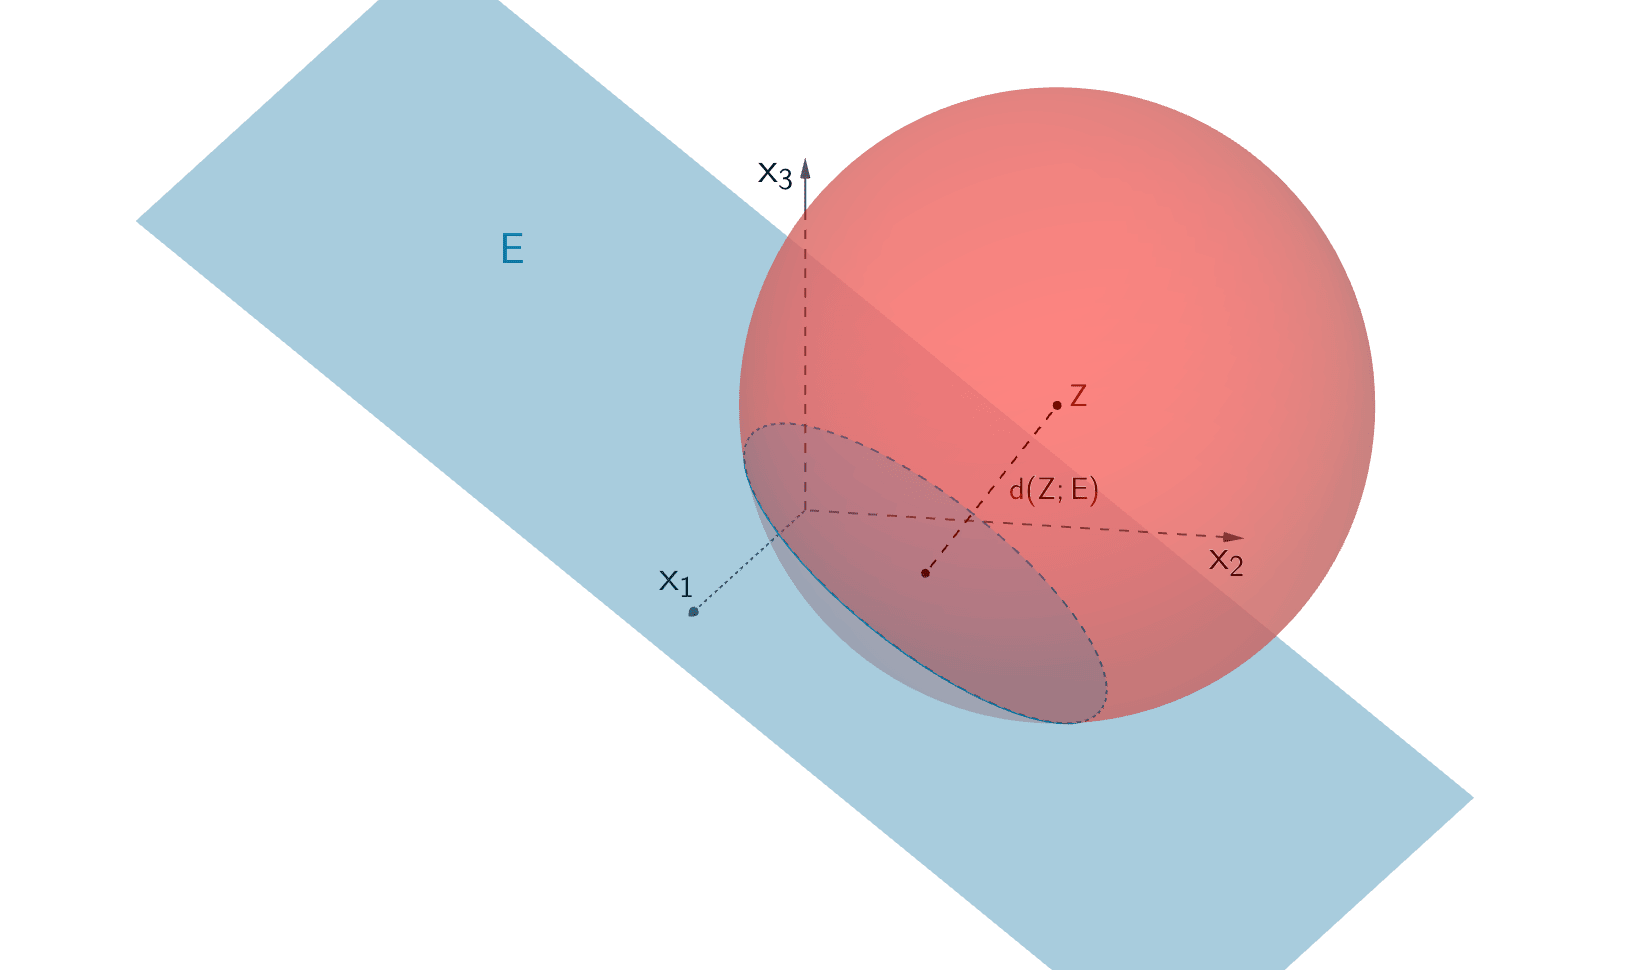 Die Kugel mit Mittelpunkt Z (1|6|3) und Radius 7 schneidet die Ebene E